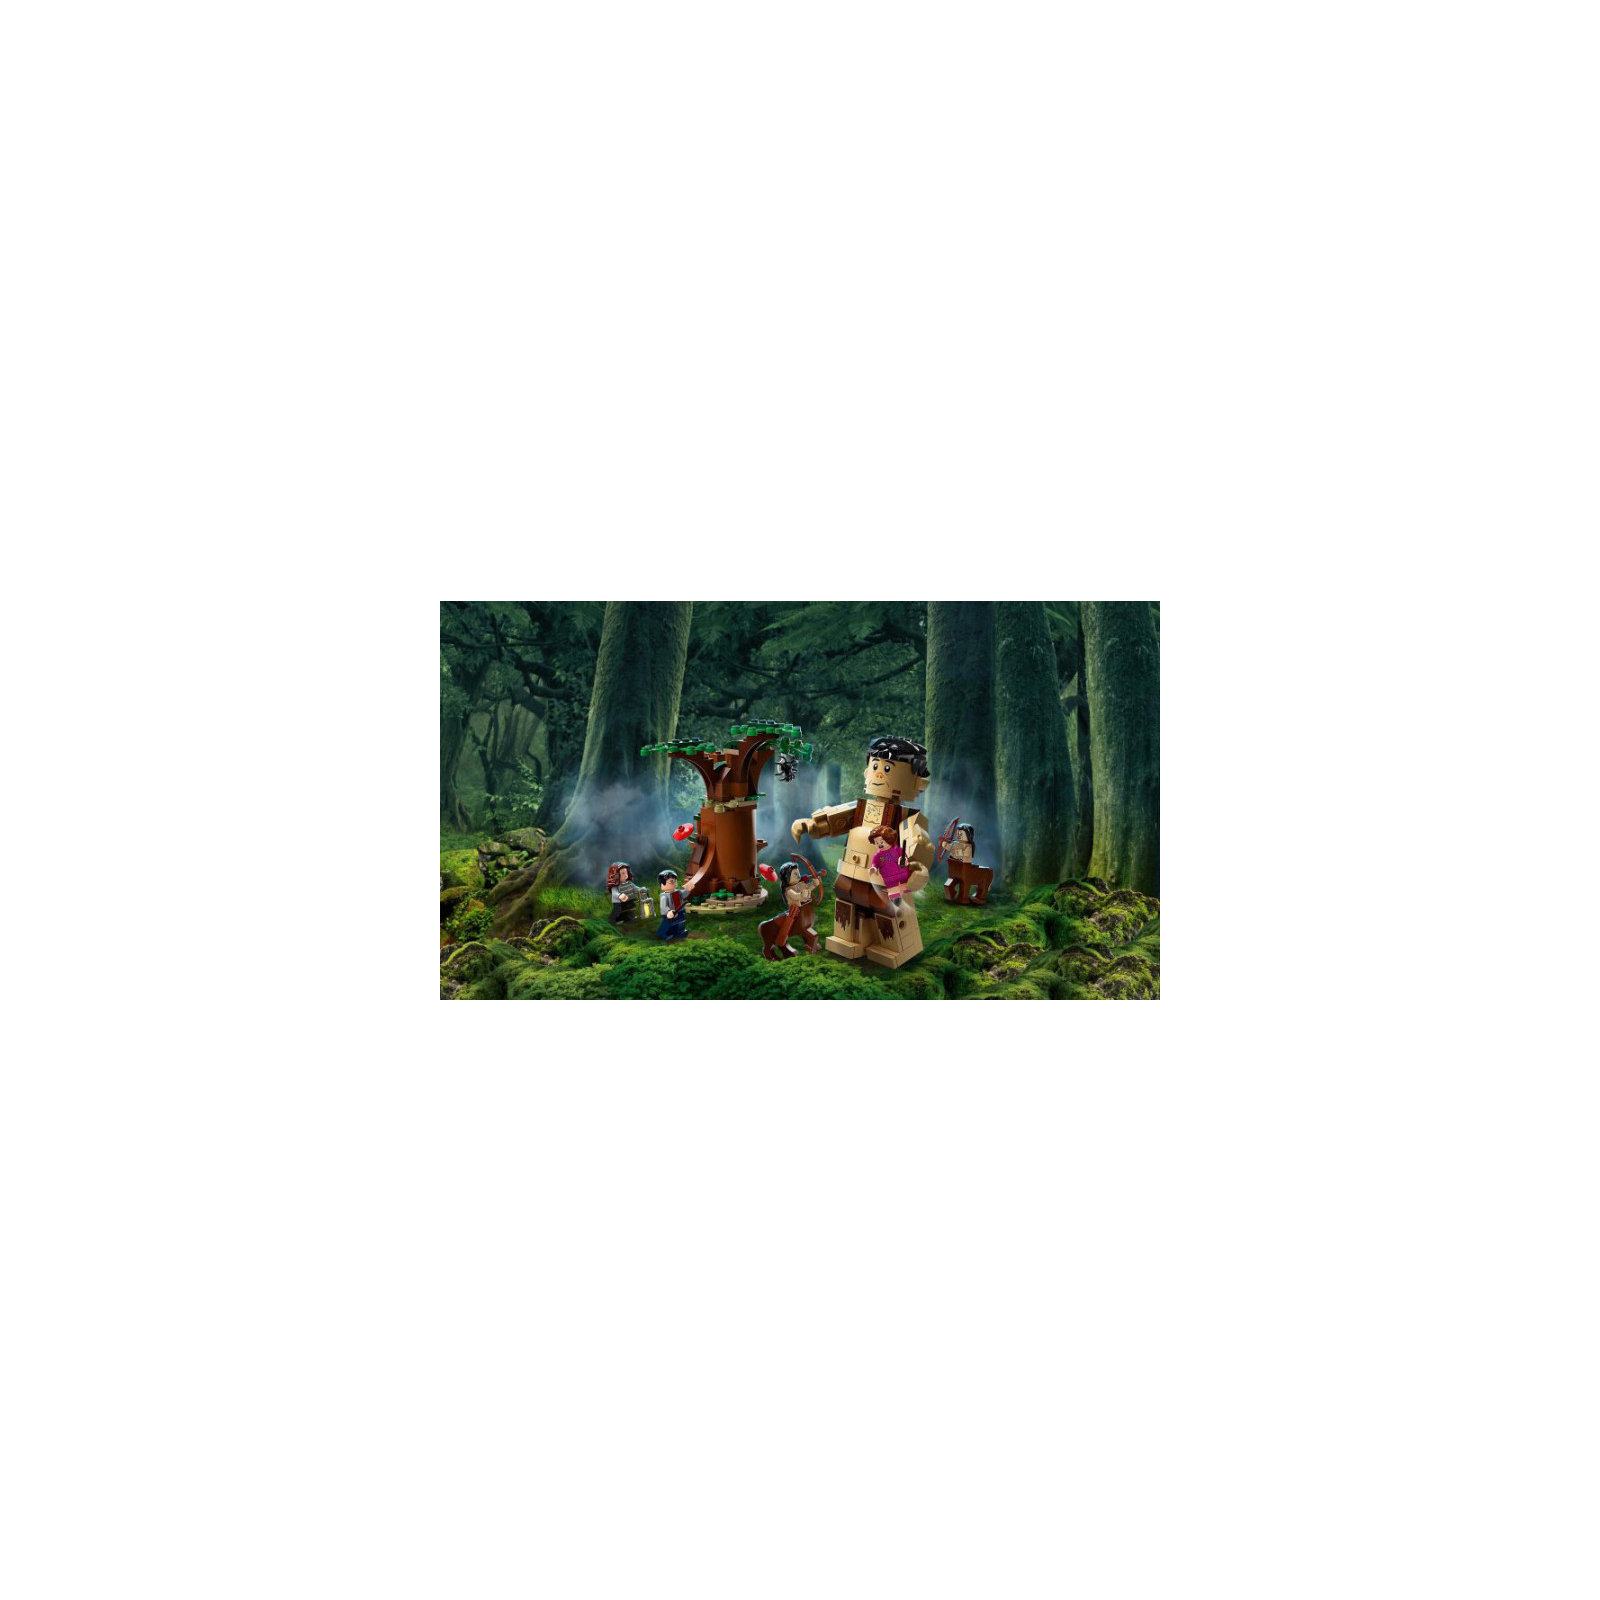 Конструктор LEGO Harry Potter Запретный лес: Грохх и Долорес Амбридж (75967) изображение 4